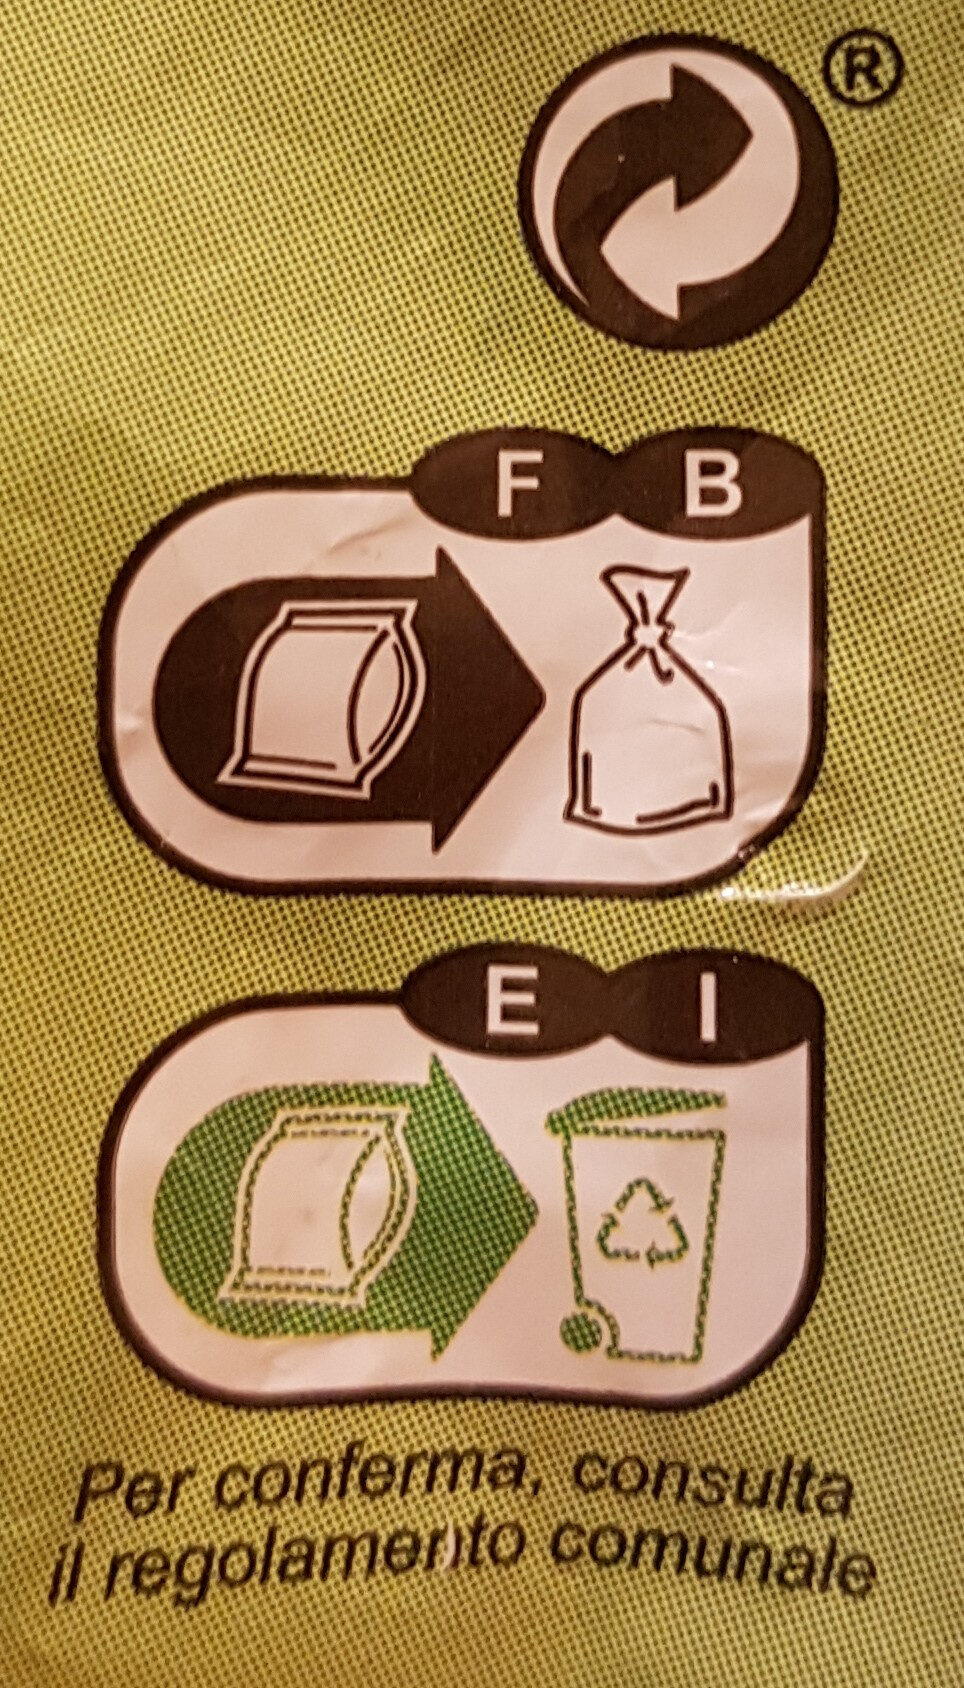 Courgettes en rondelles - Instruction de recyclage et/ou informations d'emballage